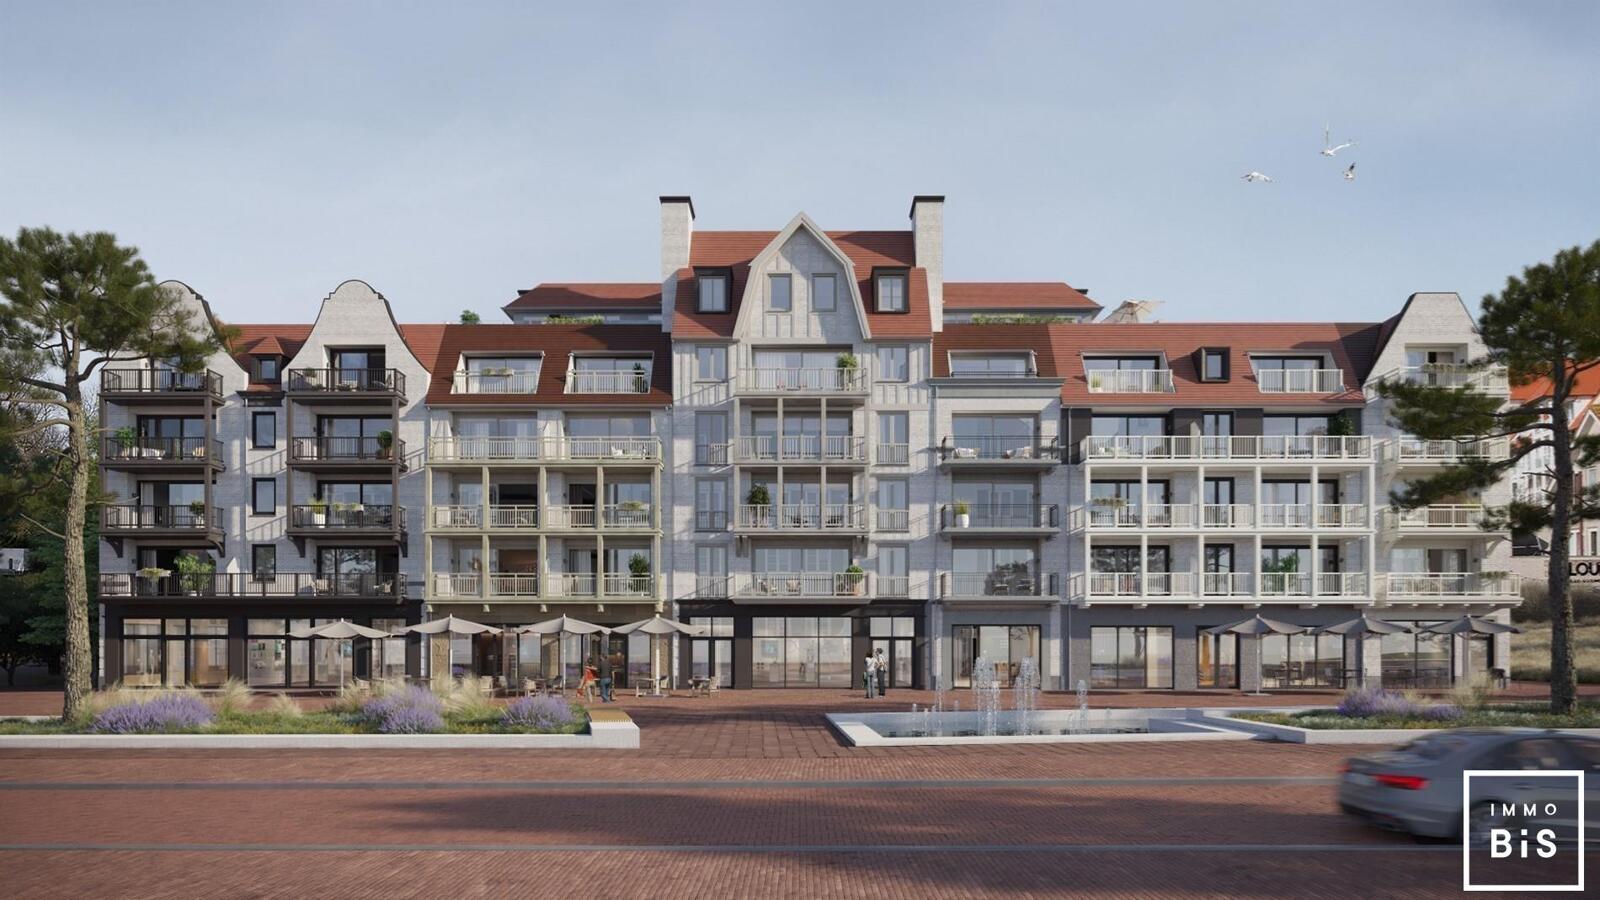 " Appartement villa moderne avec terrasse sur la Digue à Cadzand - Résidence Duinhof-Noord " 5